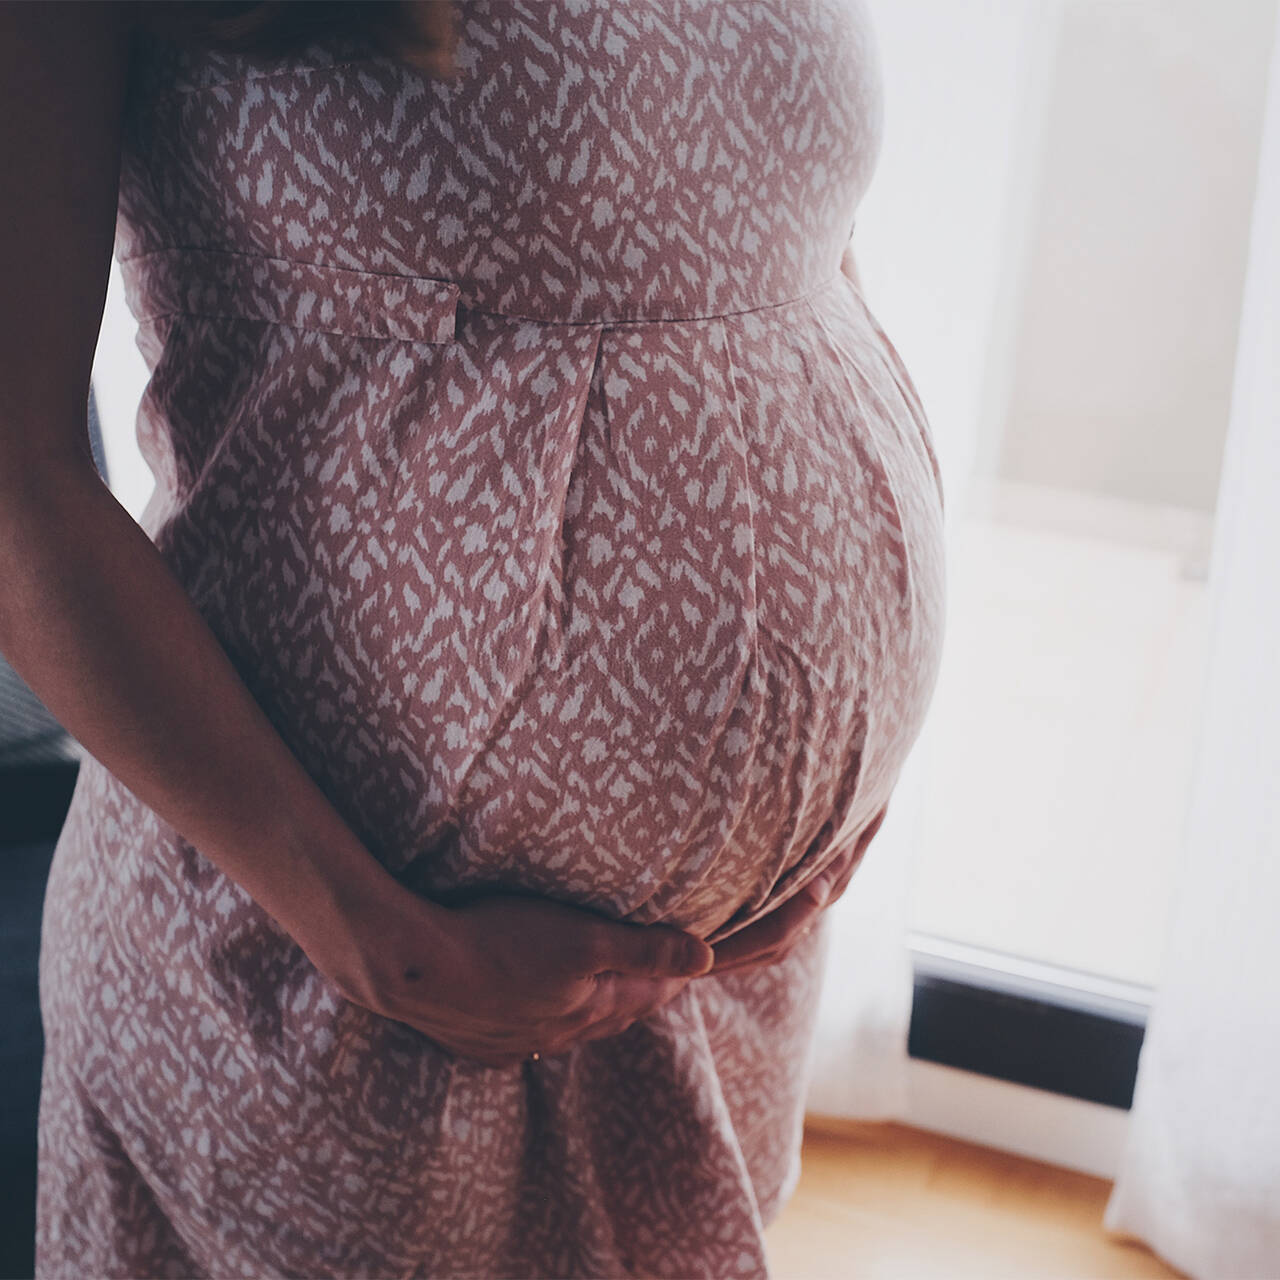 Ранняя беременность и роды в подростковом возрасте